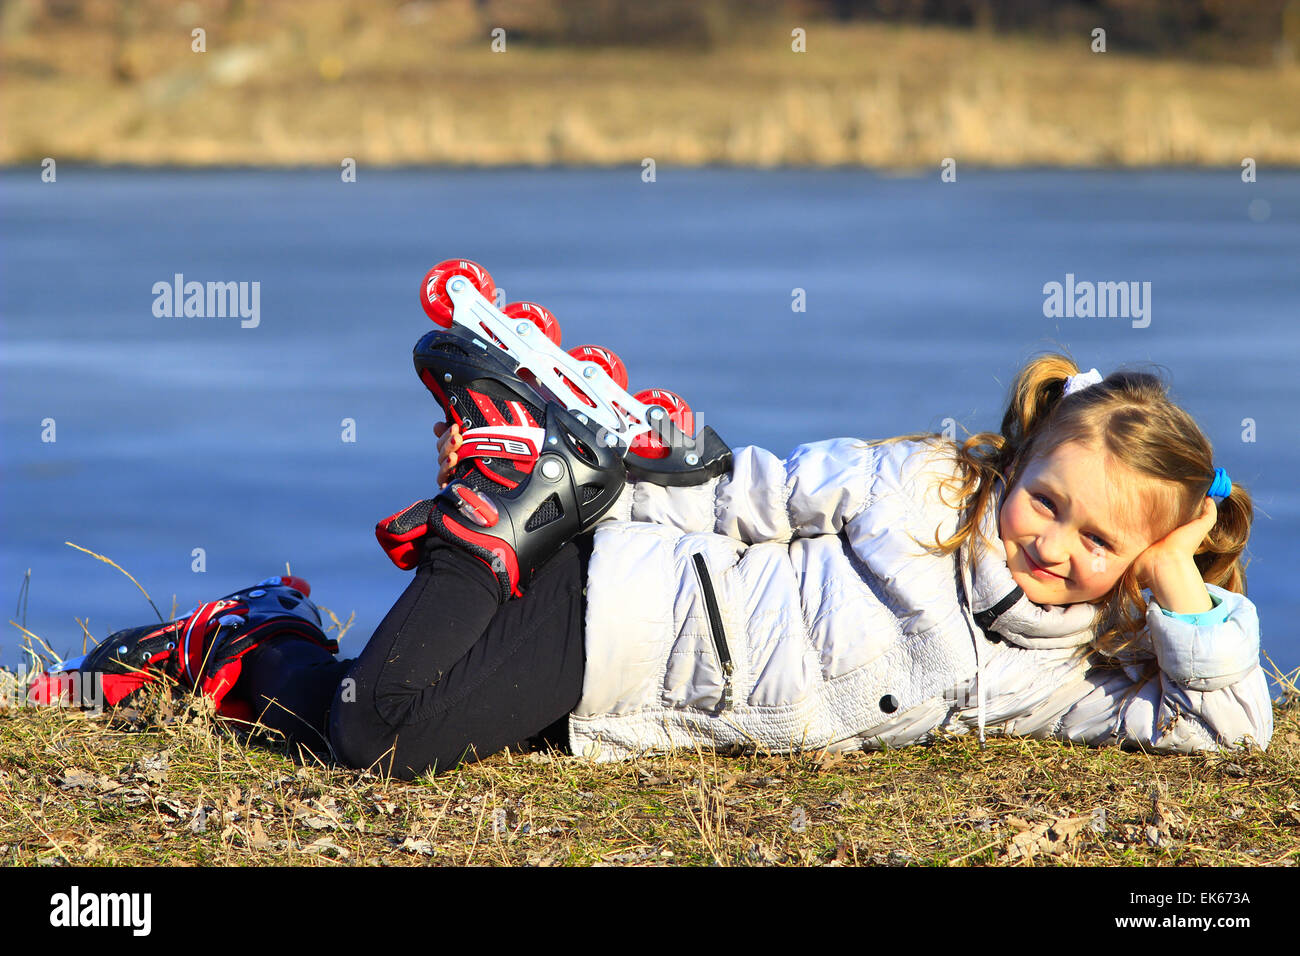 Giovane ragazza in pattini a rotelle giace a terra e sorrisi Foto Stock